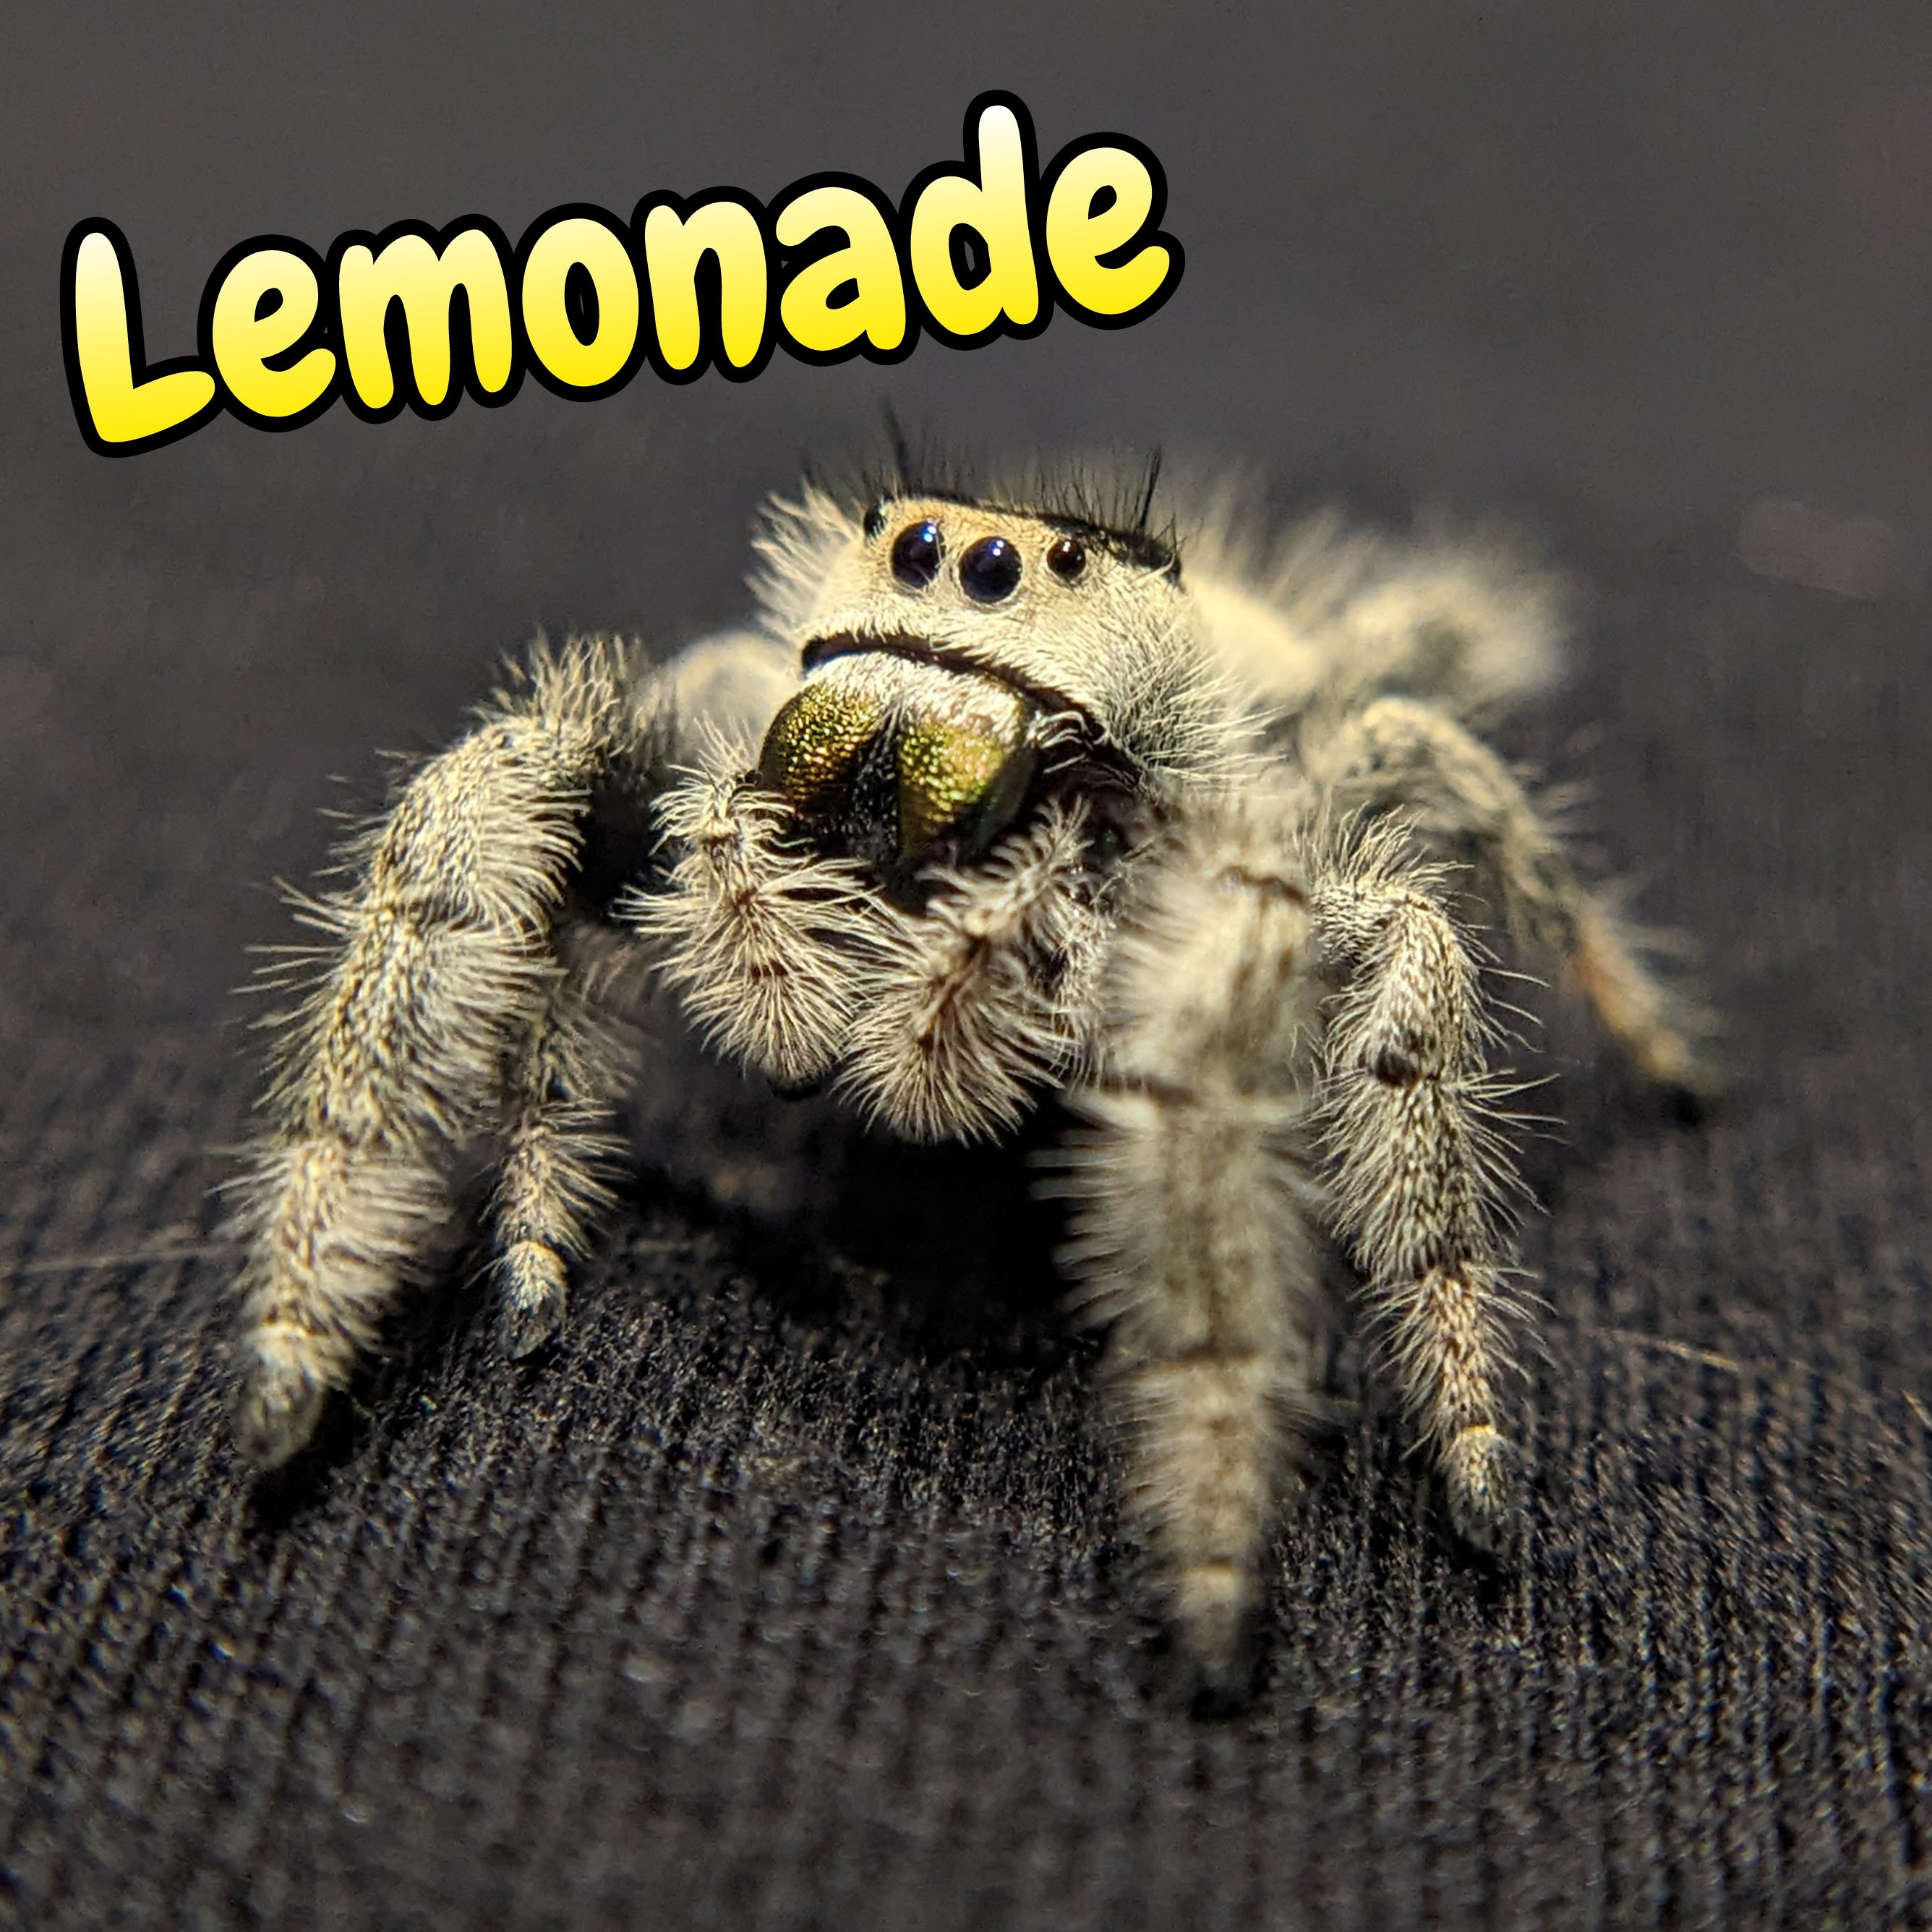 Regal Jumping Spider "Lemonade"